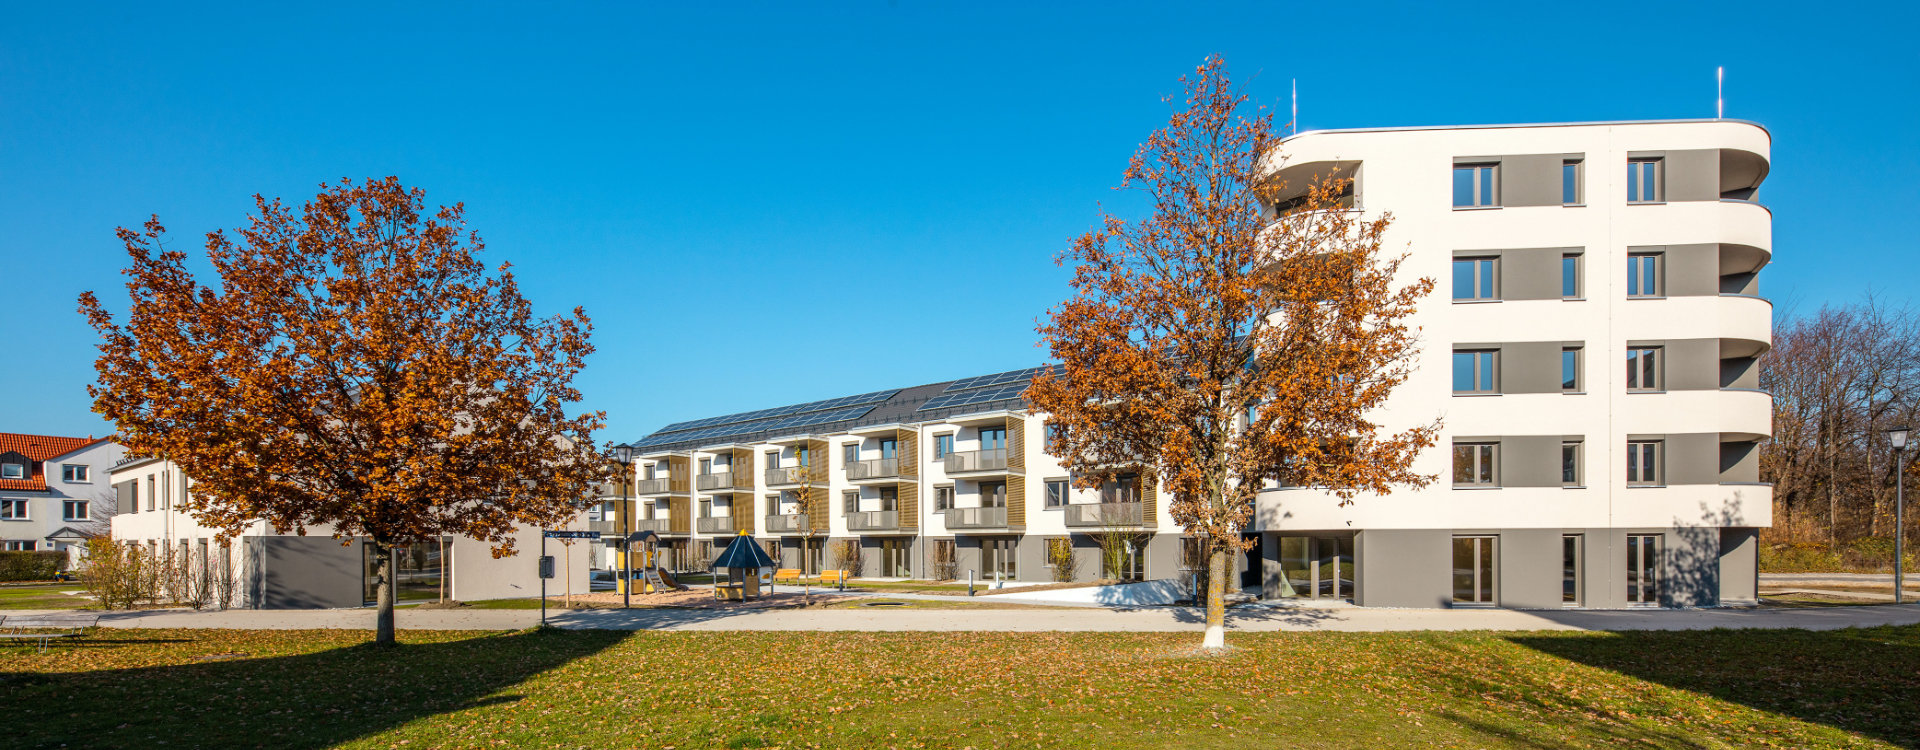 Moderne Wohnanlage in Neubiberg, erbaut mit Dämmstoff gefüllten Ziegeln von UNIPOR